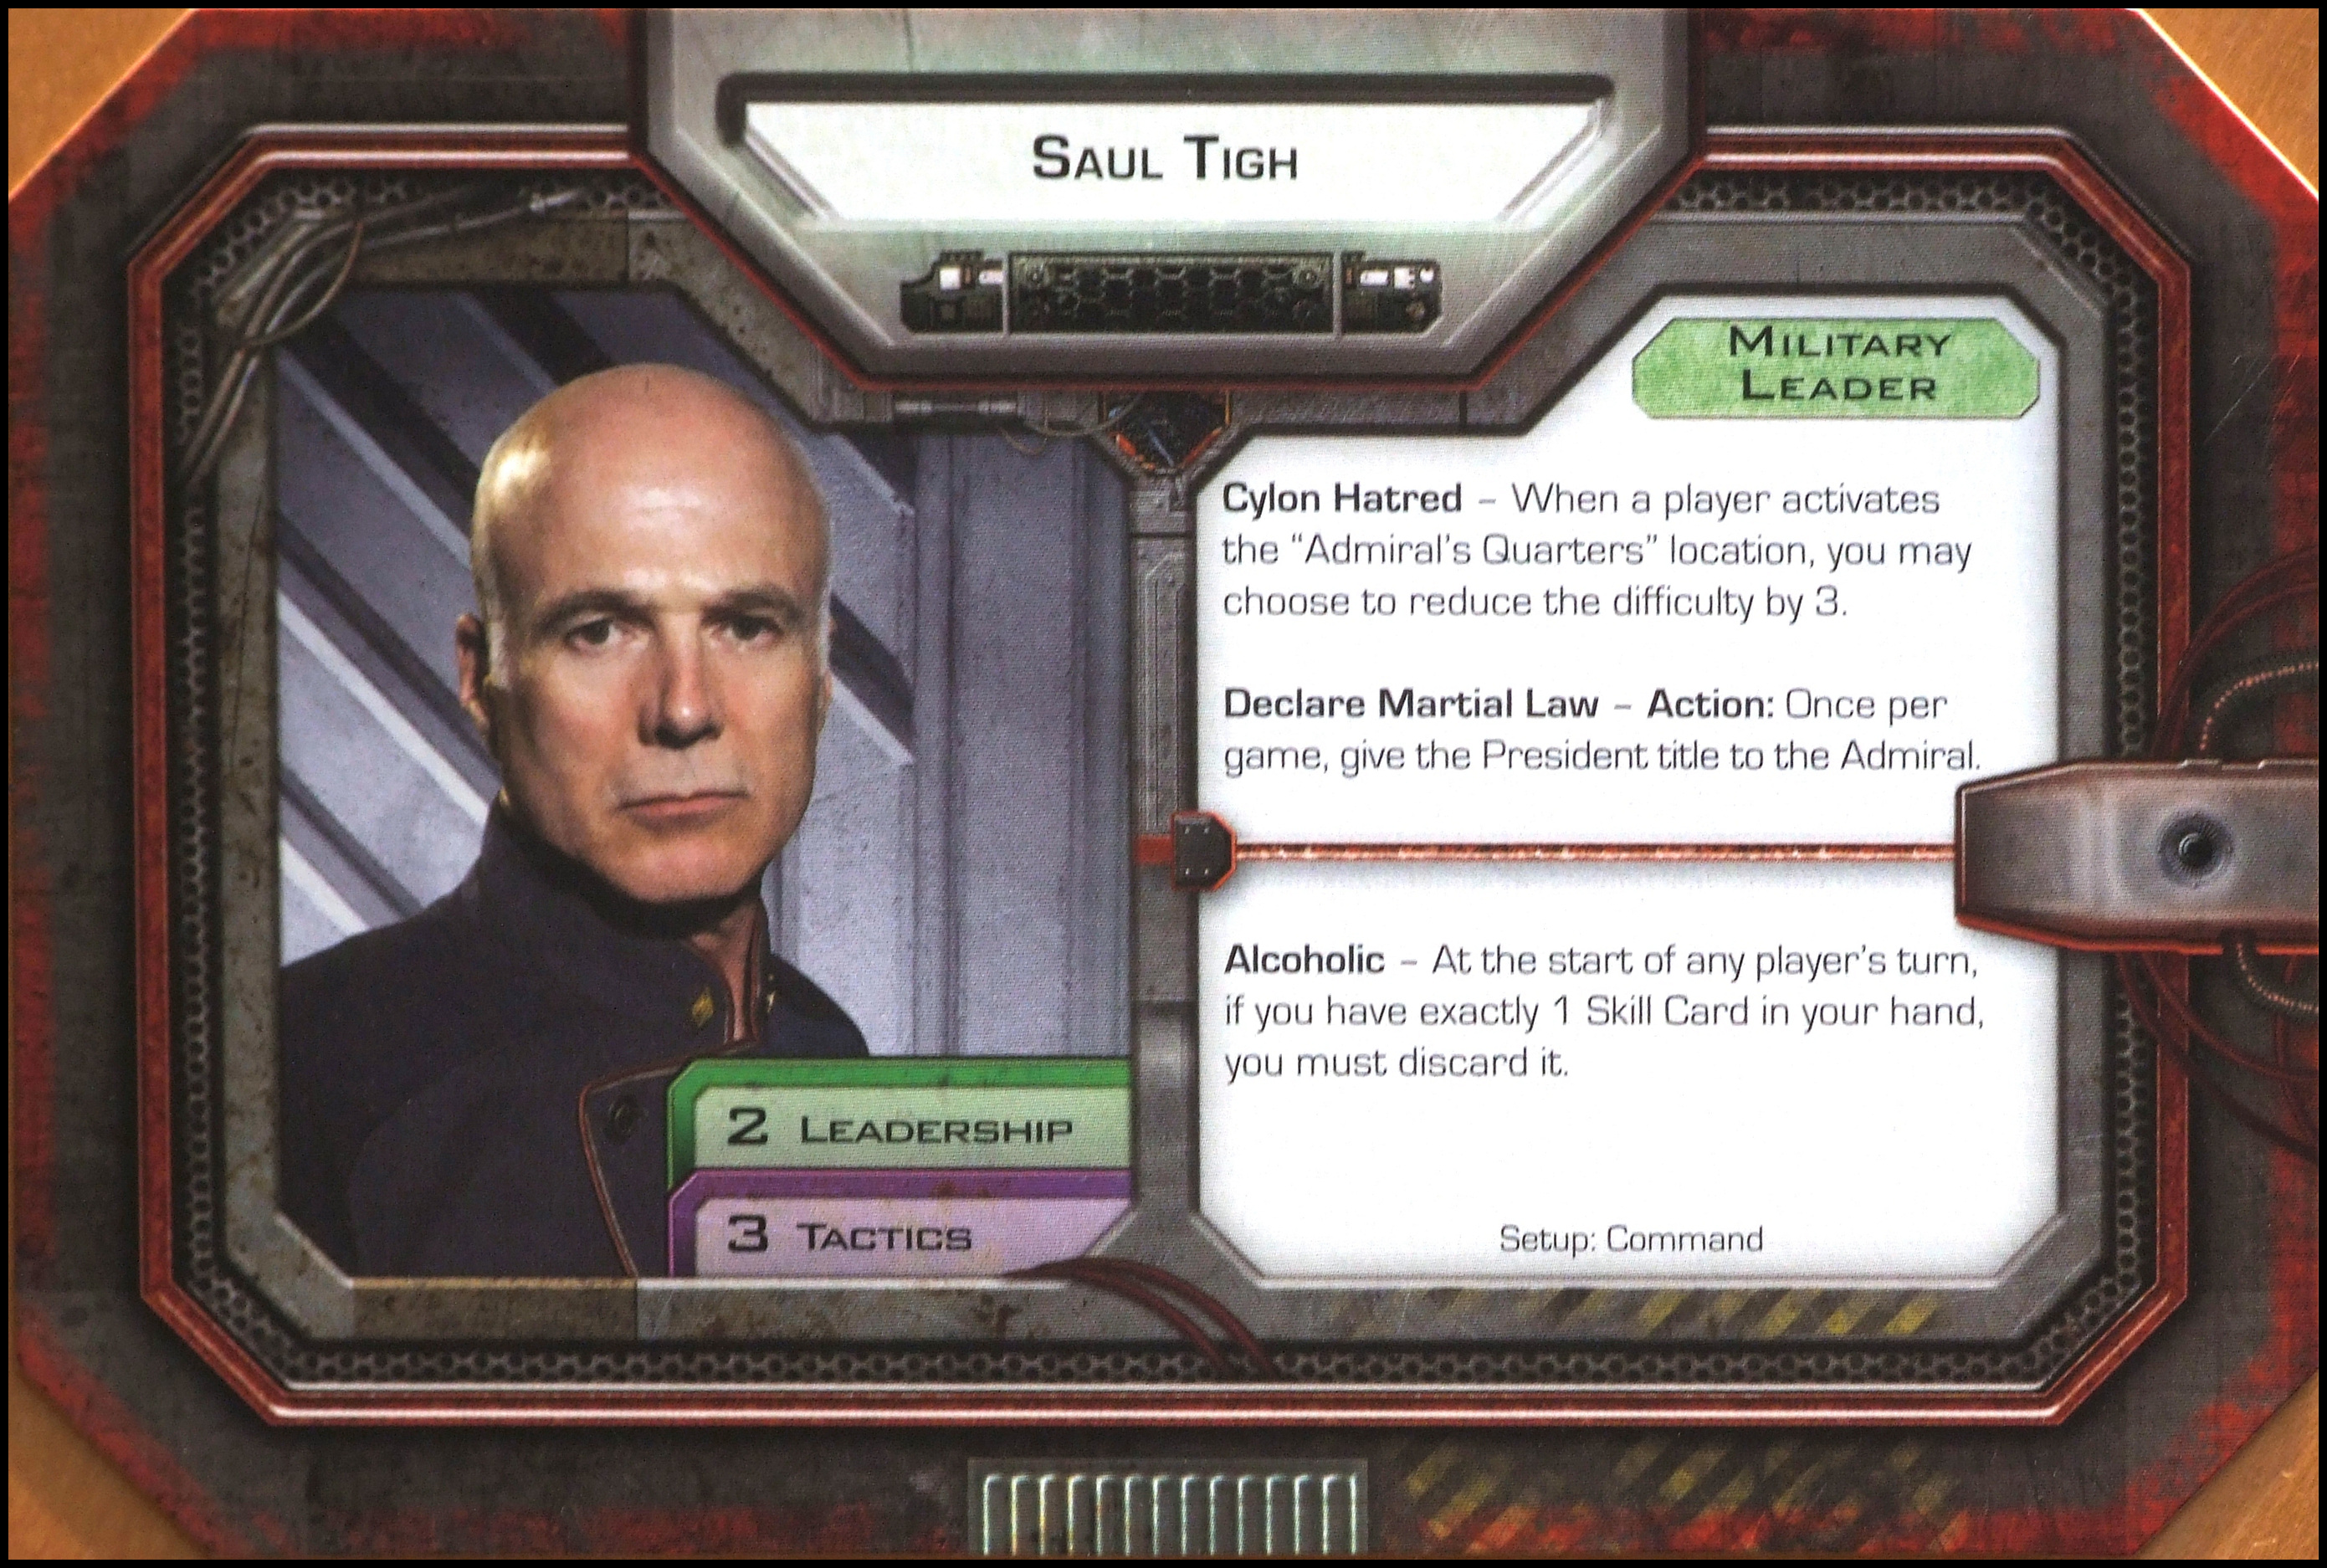 Battlestar Galactica: The Board Game - Saul Tigh Card